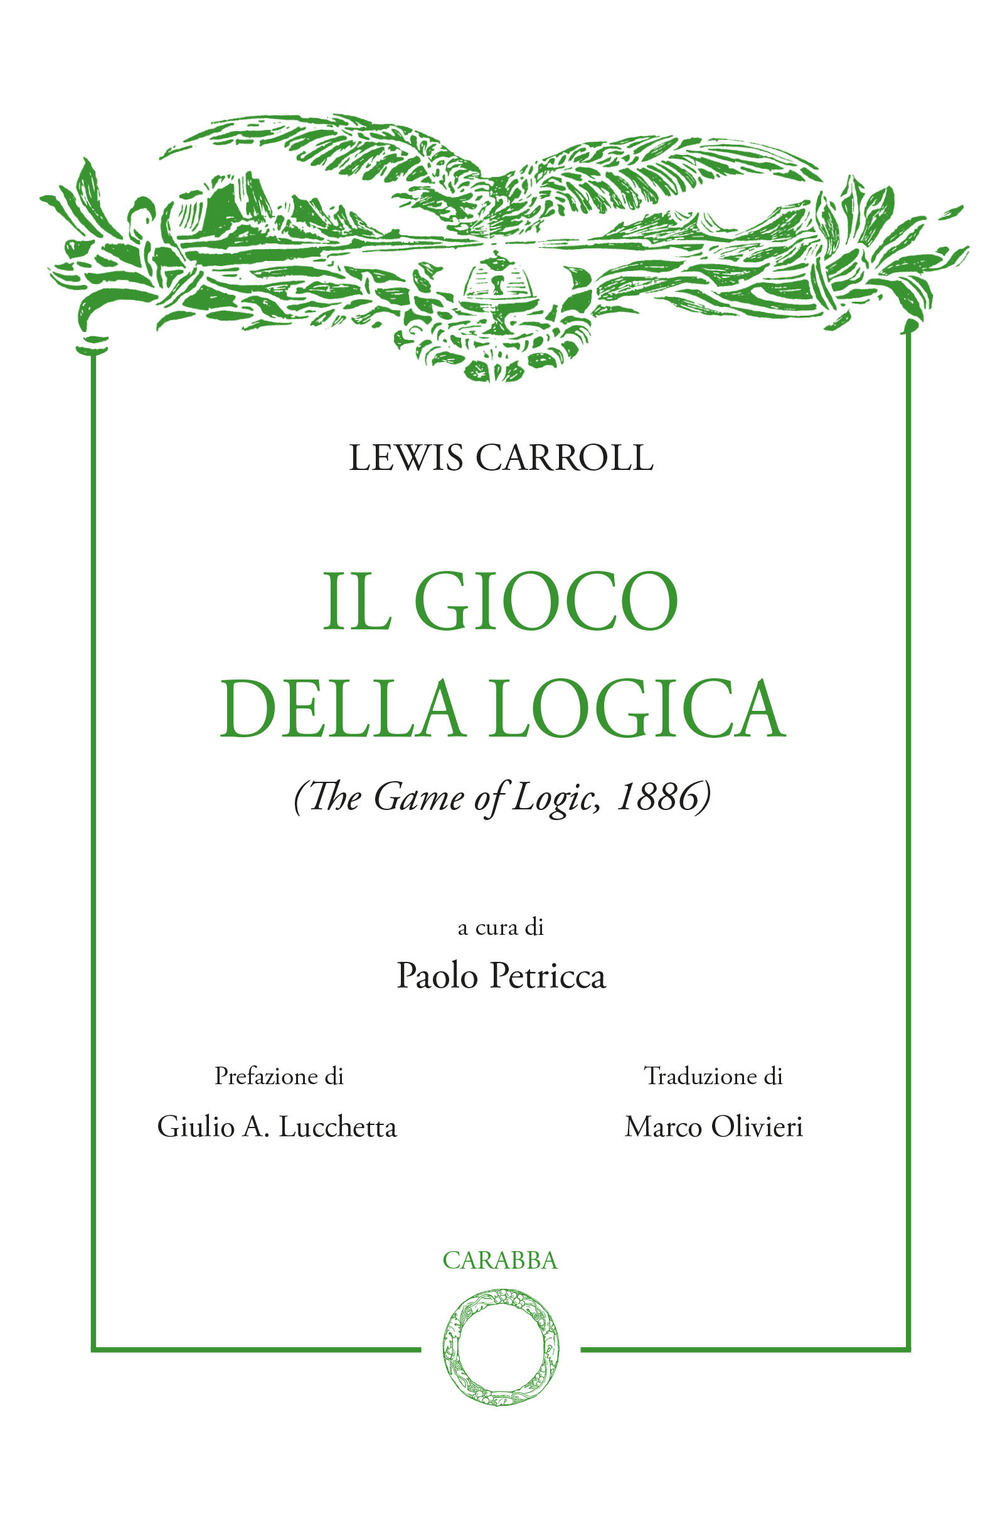 Libri Lewis Carroll - Il Gioco Della Logica NUOVO SIGILLATO, EDIZIONE DEL 22/04/2022 SUBITO DISPONIBILE